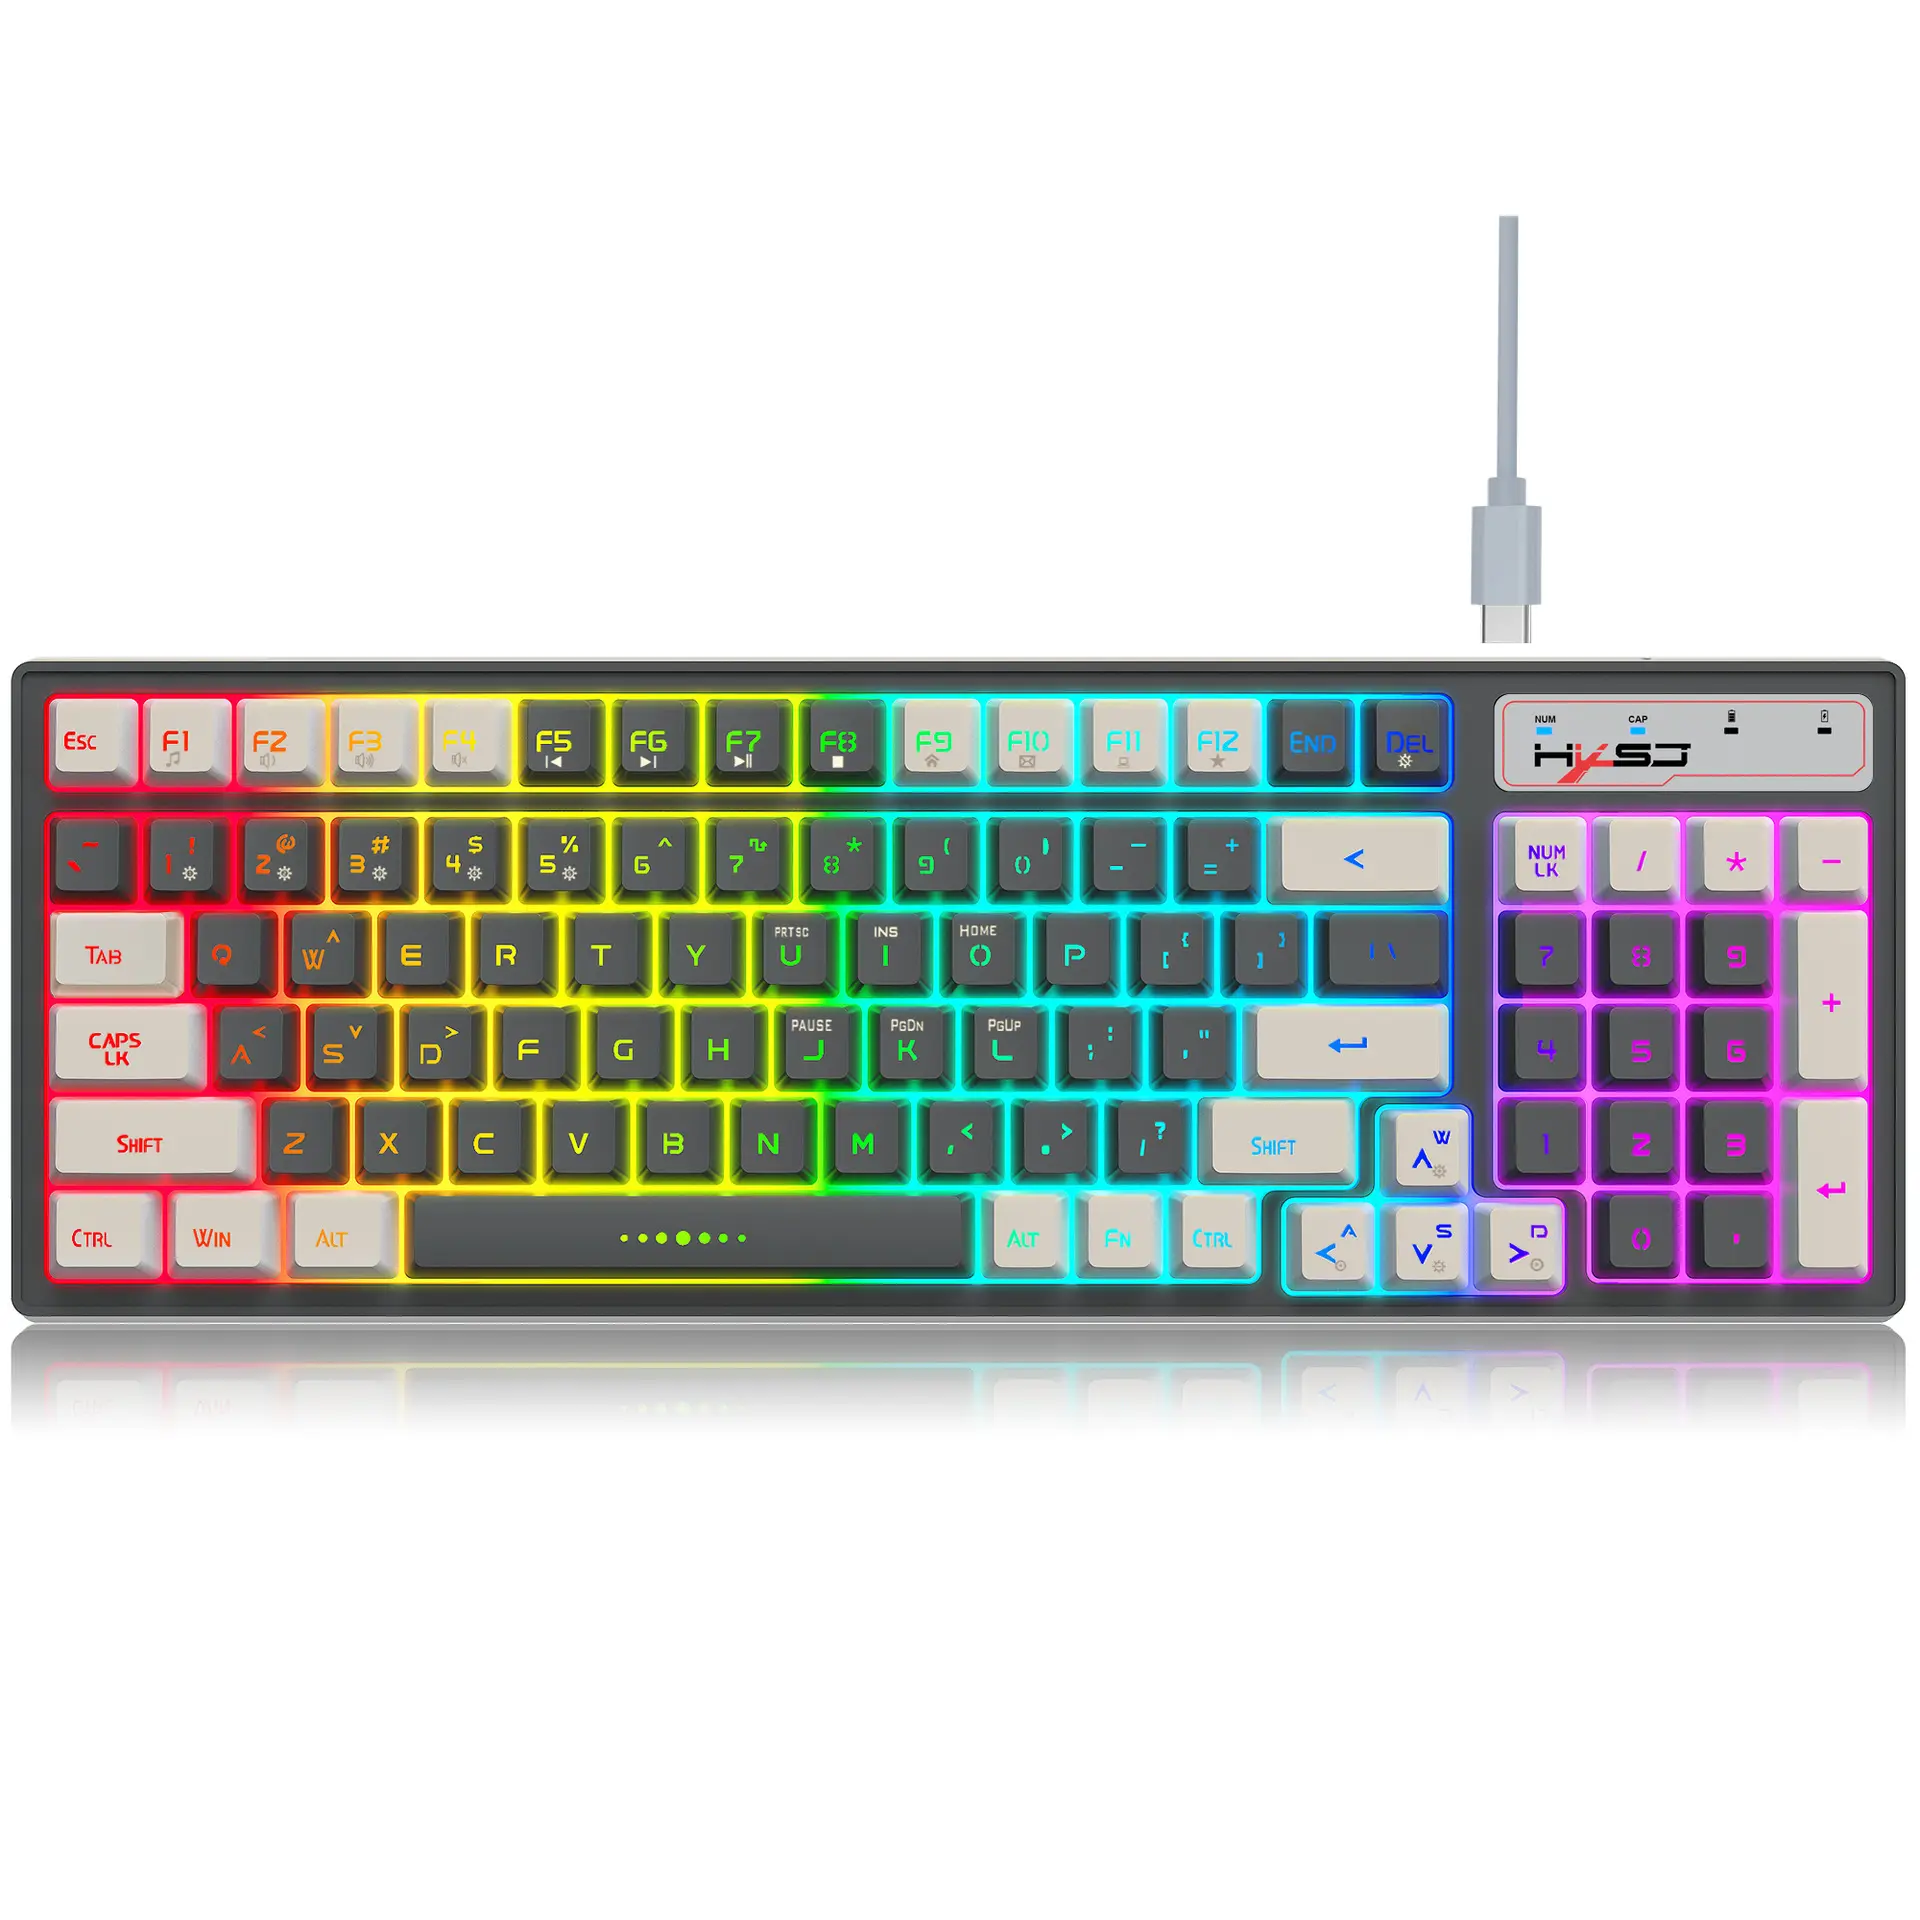 PC 96 tuşları için kablosuz klavye ve fare Combo kablosuz mekanik klavye özel arkadan aydınlatmalı oyun Light up klavye ucuz